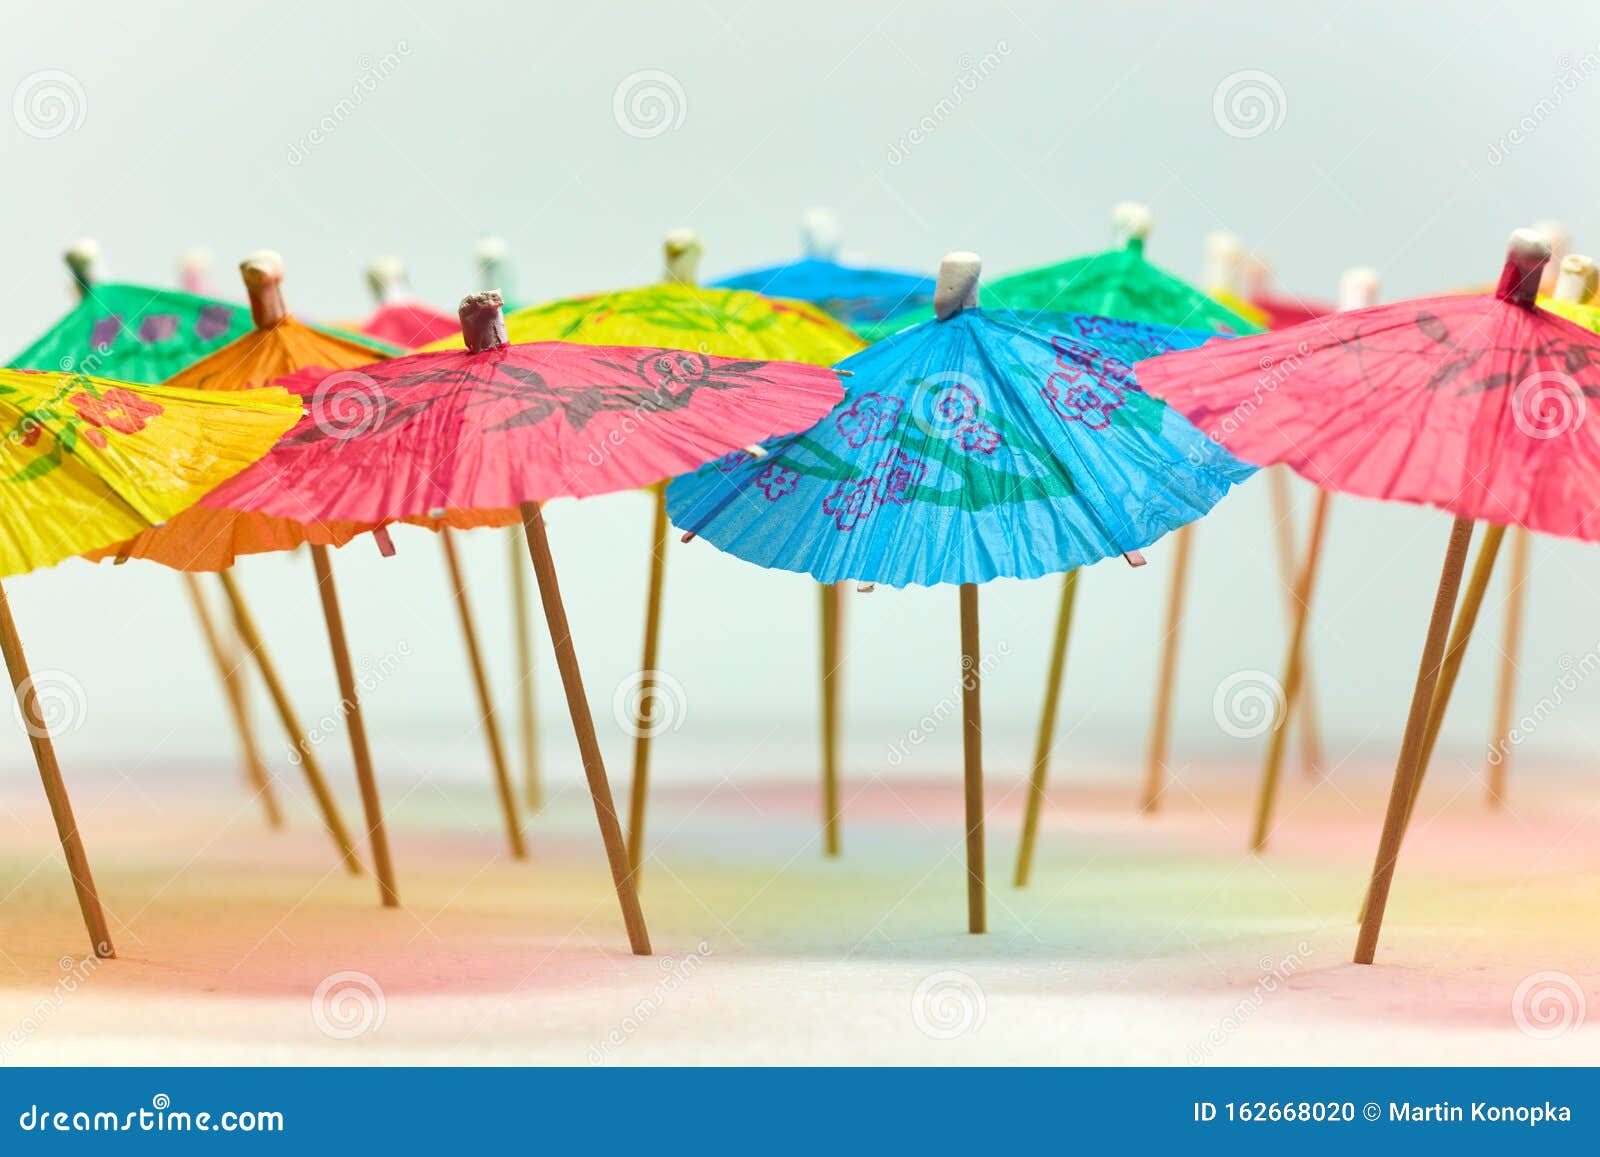 Paraguas de papel foto de Imagen - 162668020